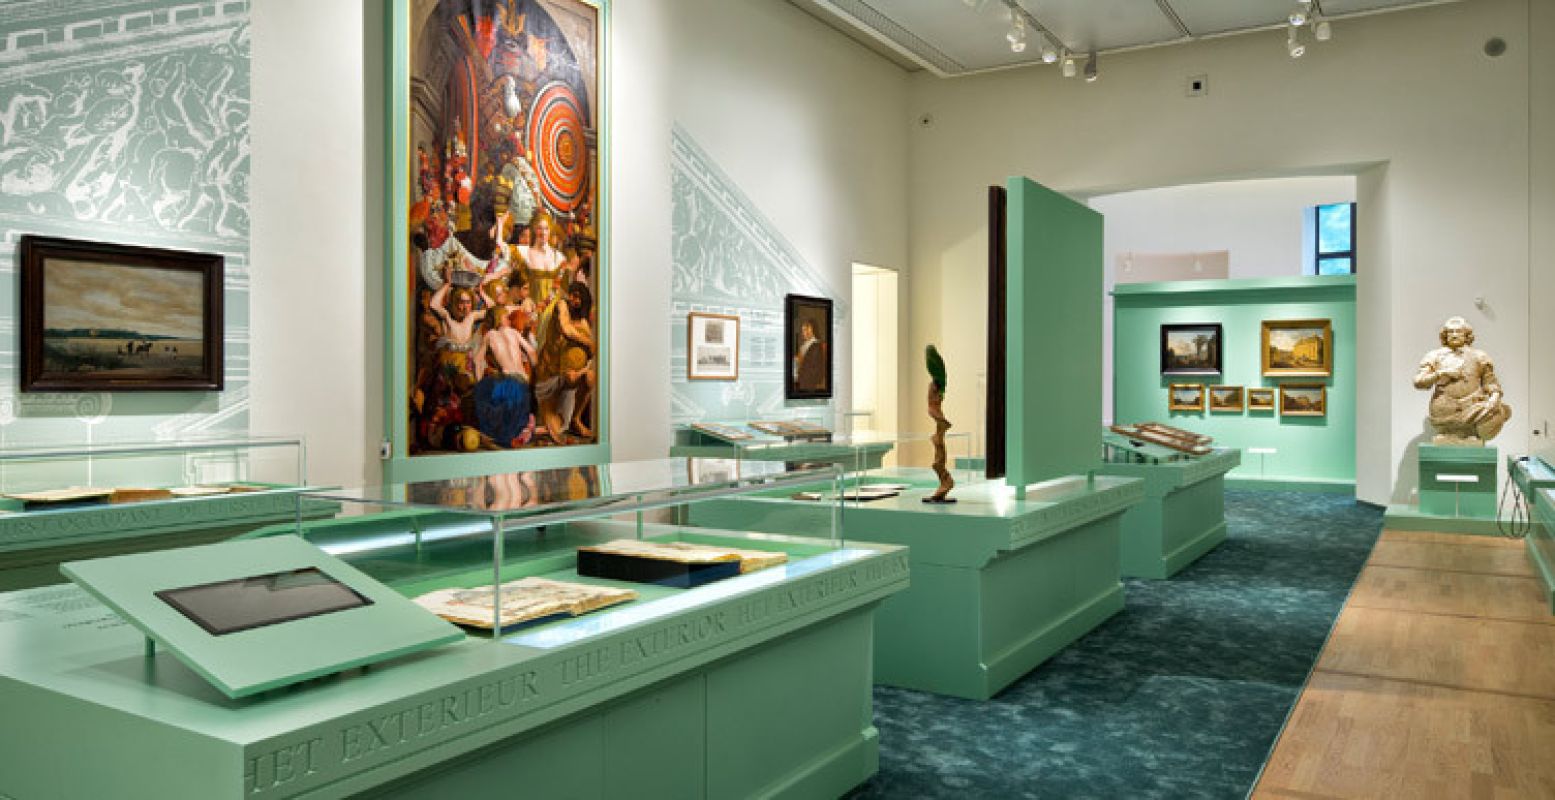 Expositie over de geschiedenis van het Mauritshuis. Foto: © Ronald Tilleman. Mauritshuis, Den Haag